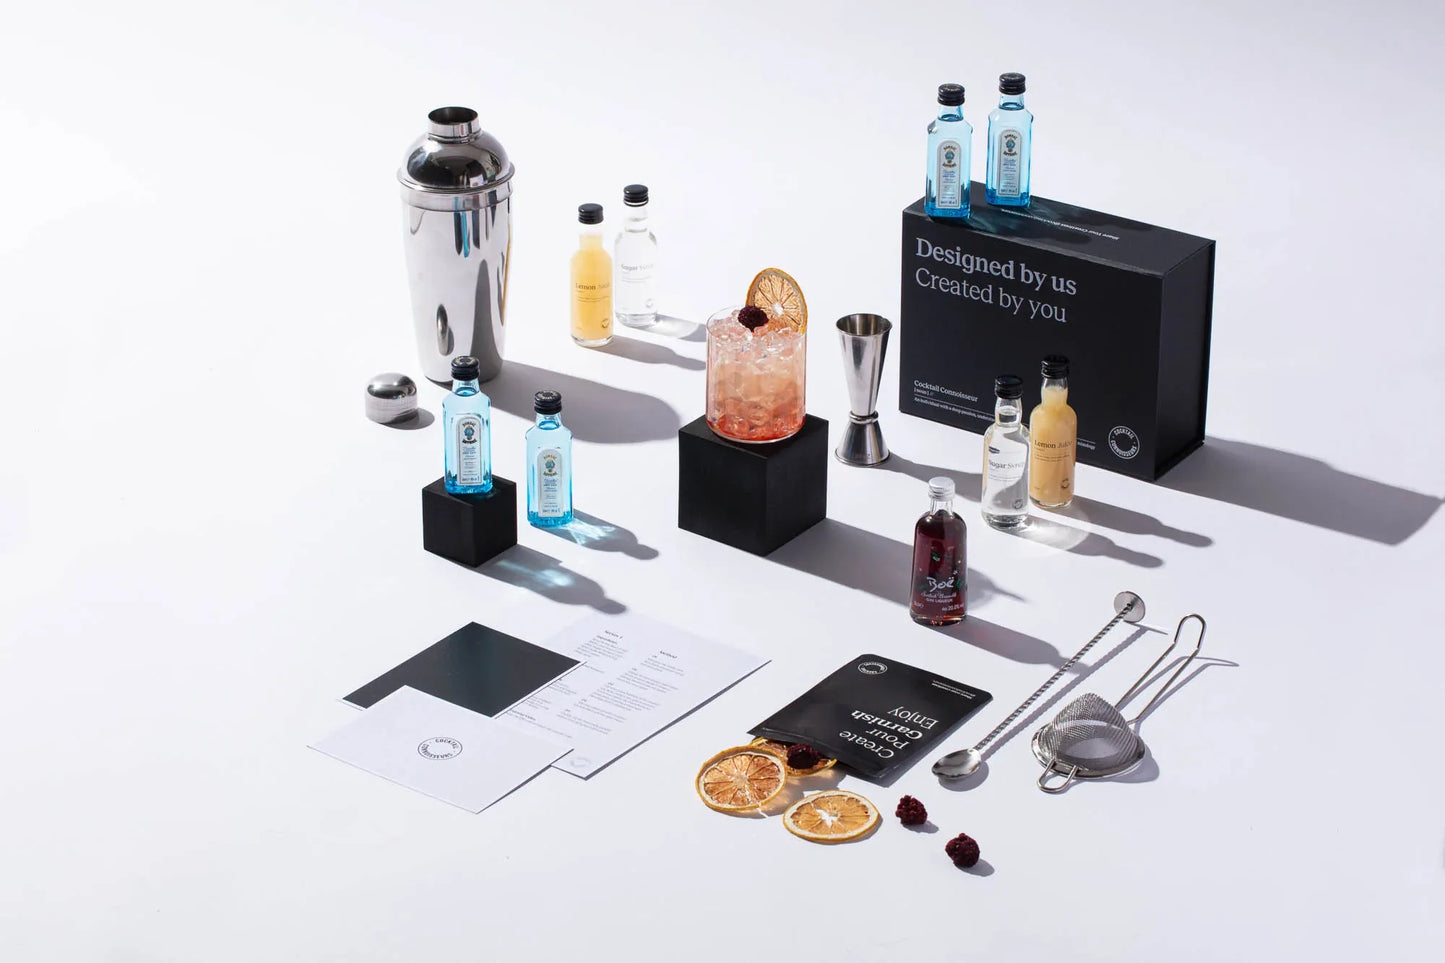 Bramble cocktail kit gift set with beginner bar equipment